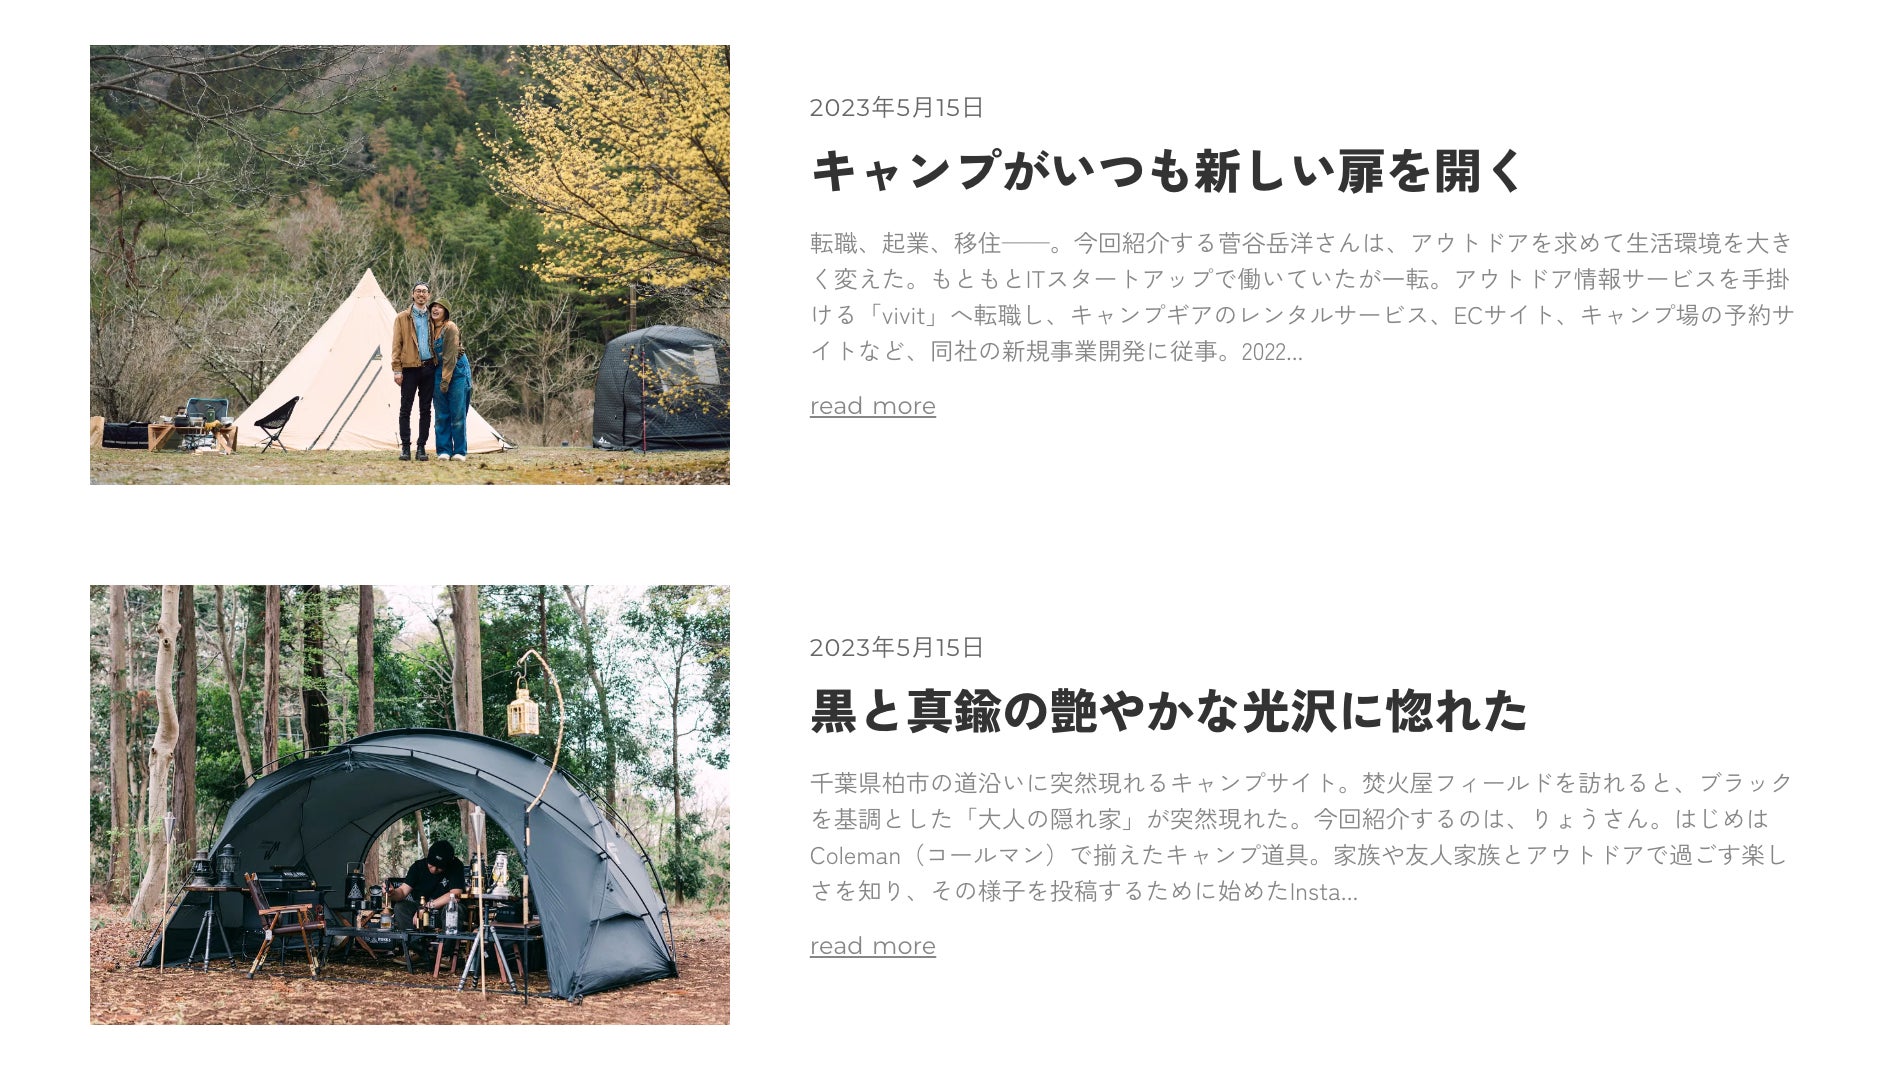 キャンプの楽しさを再発見する本格的なキャンプスタイルメディア「FORRENT」を公開のサブ画像2